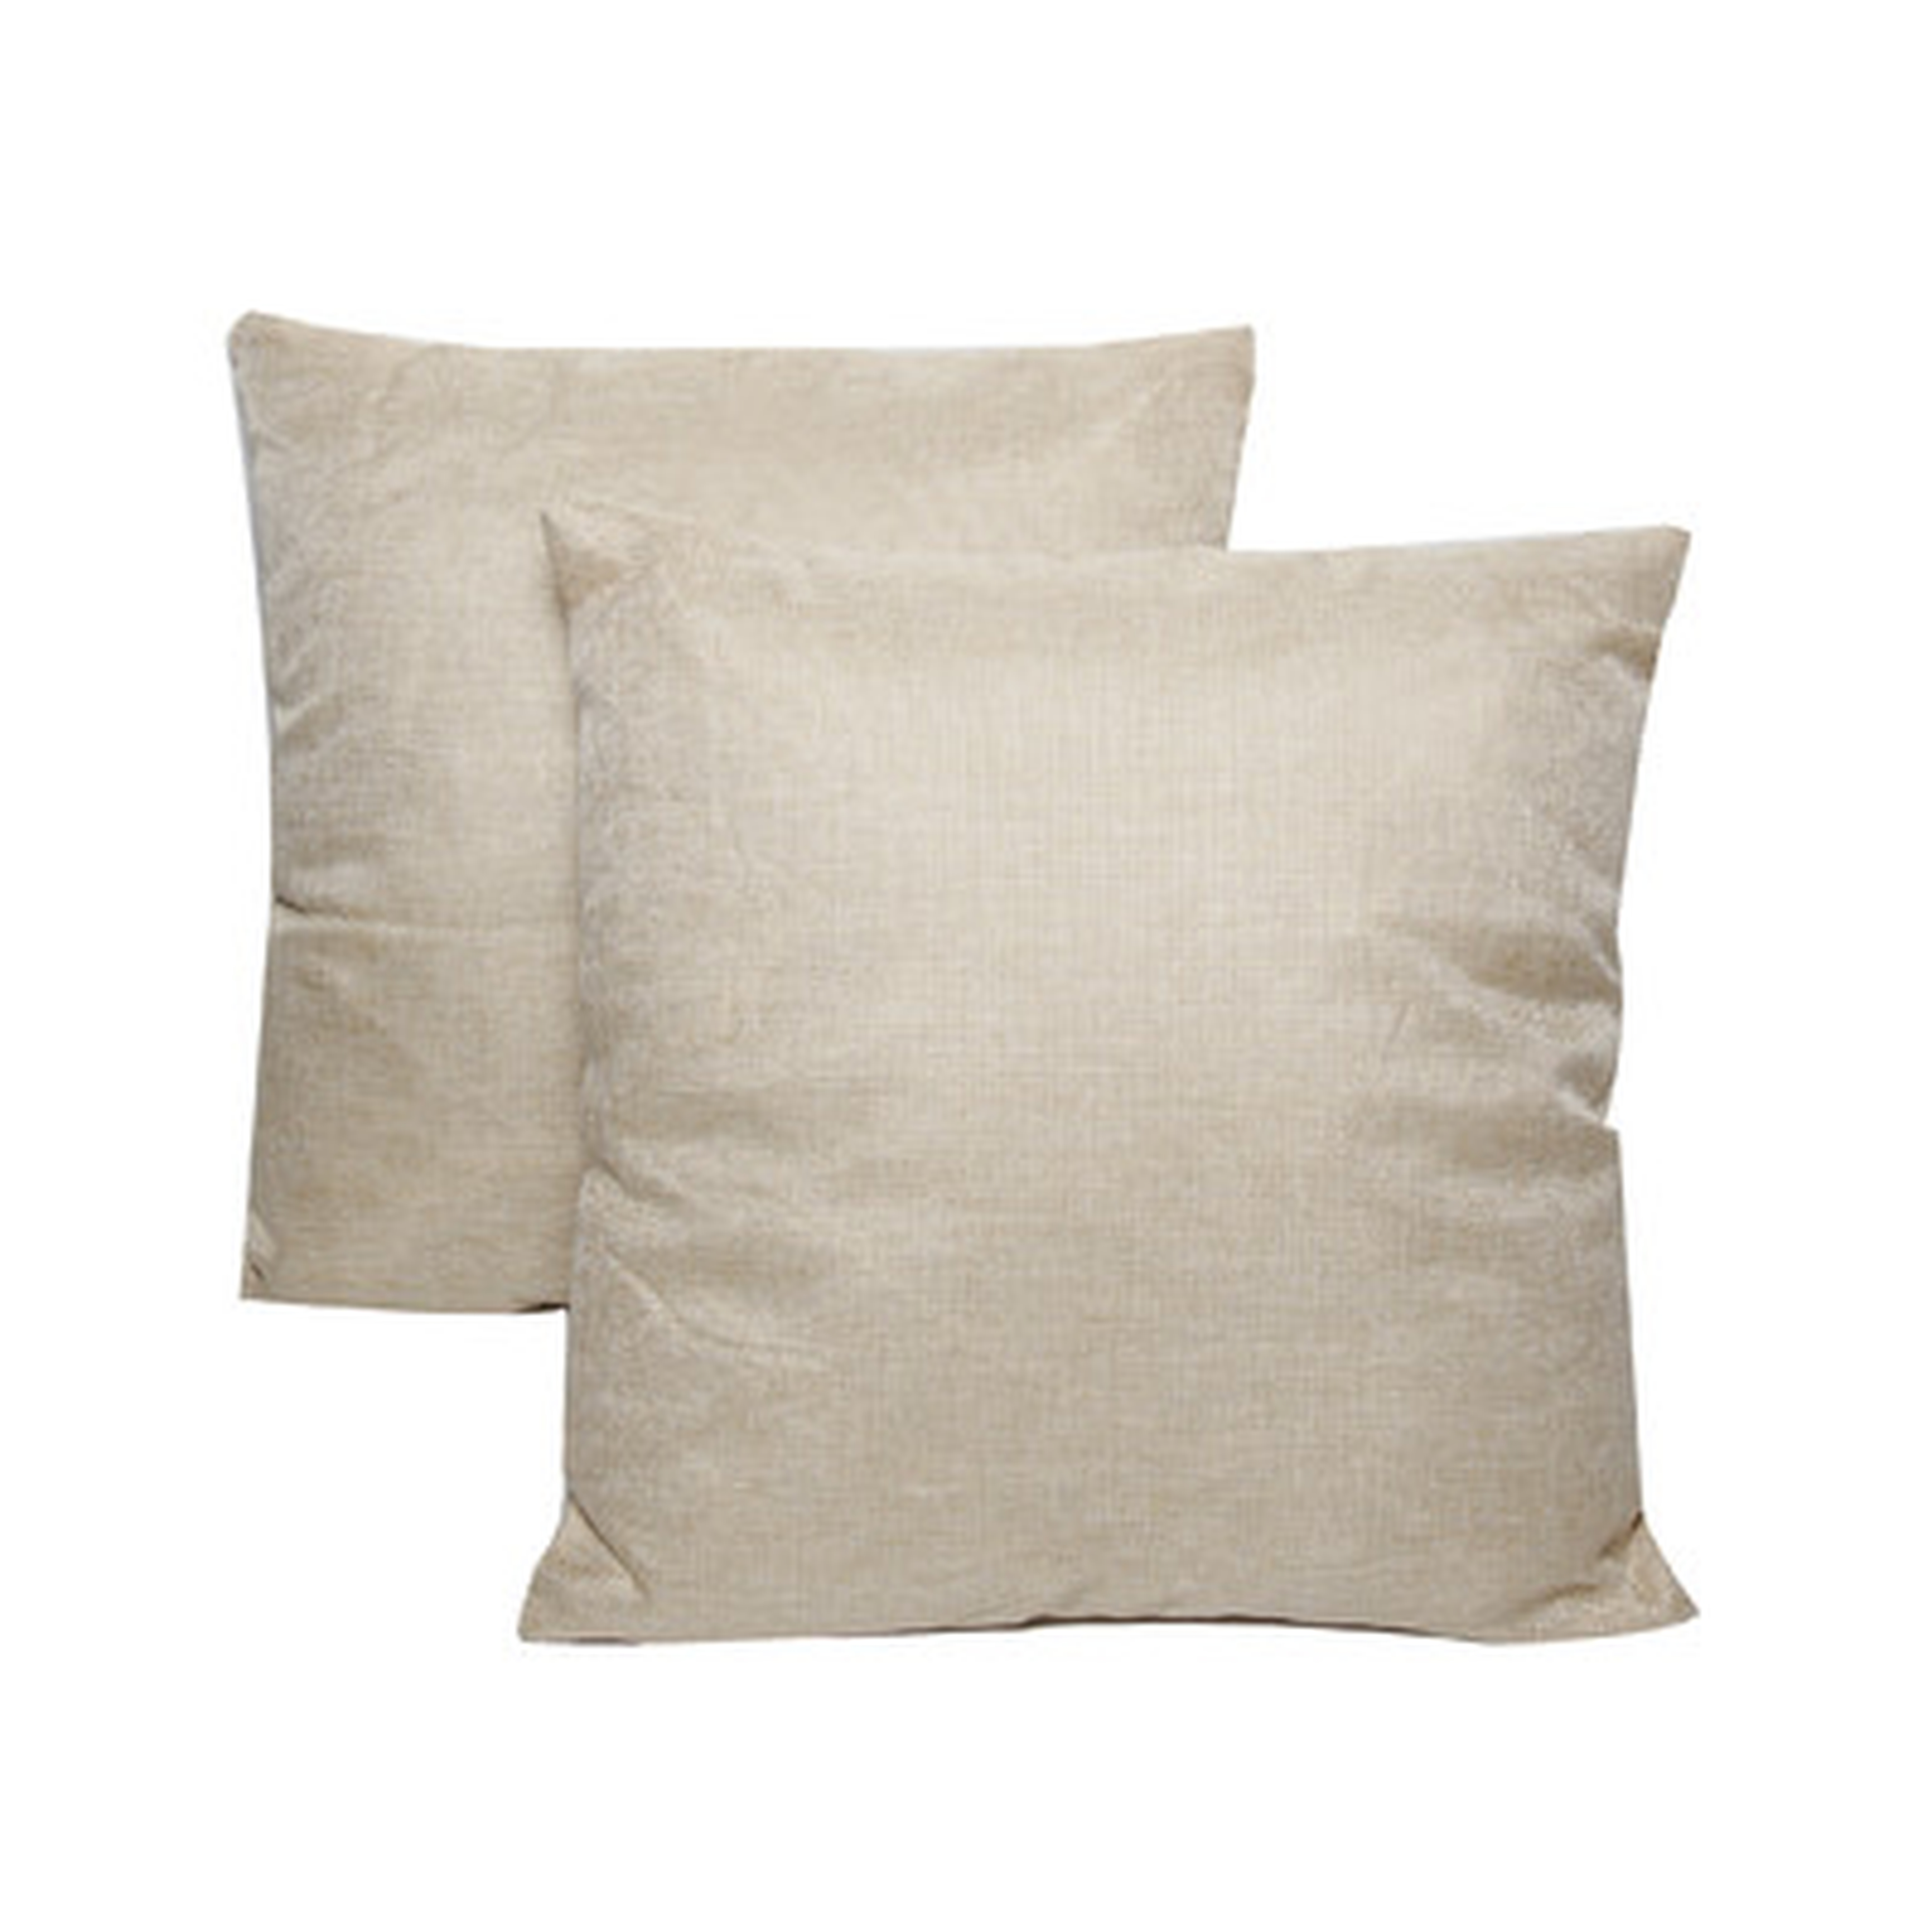 Wayfair Basics 18" Throw Pillow - Set of 2 - Poly Fill - Cream - Wayfair